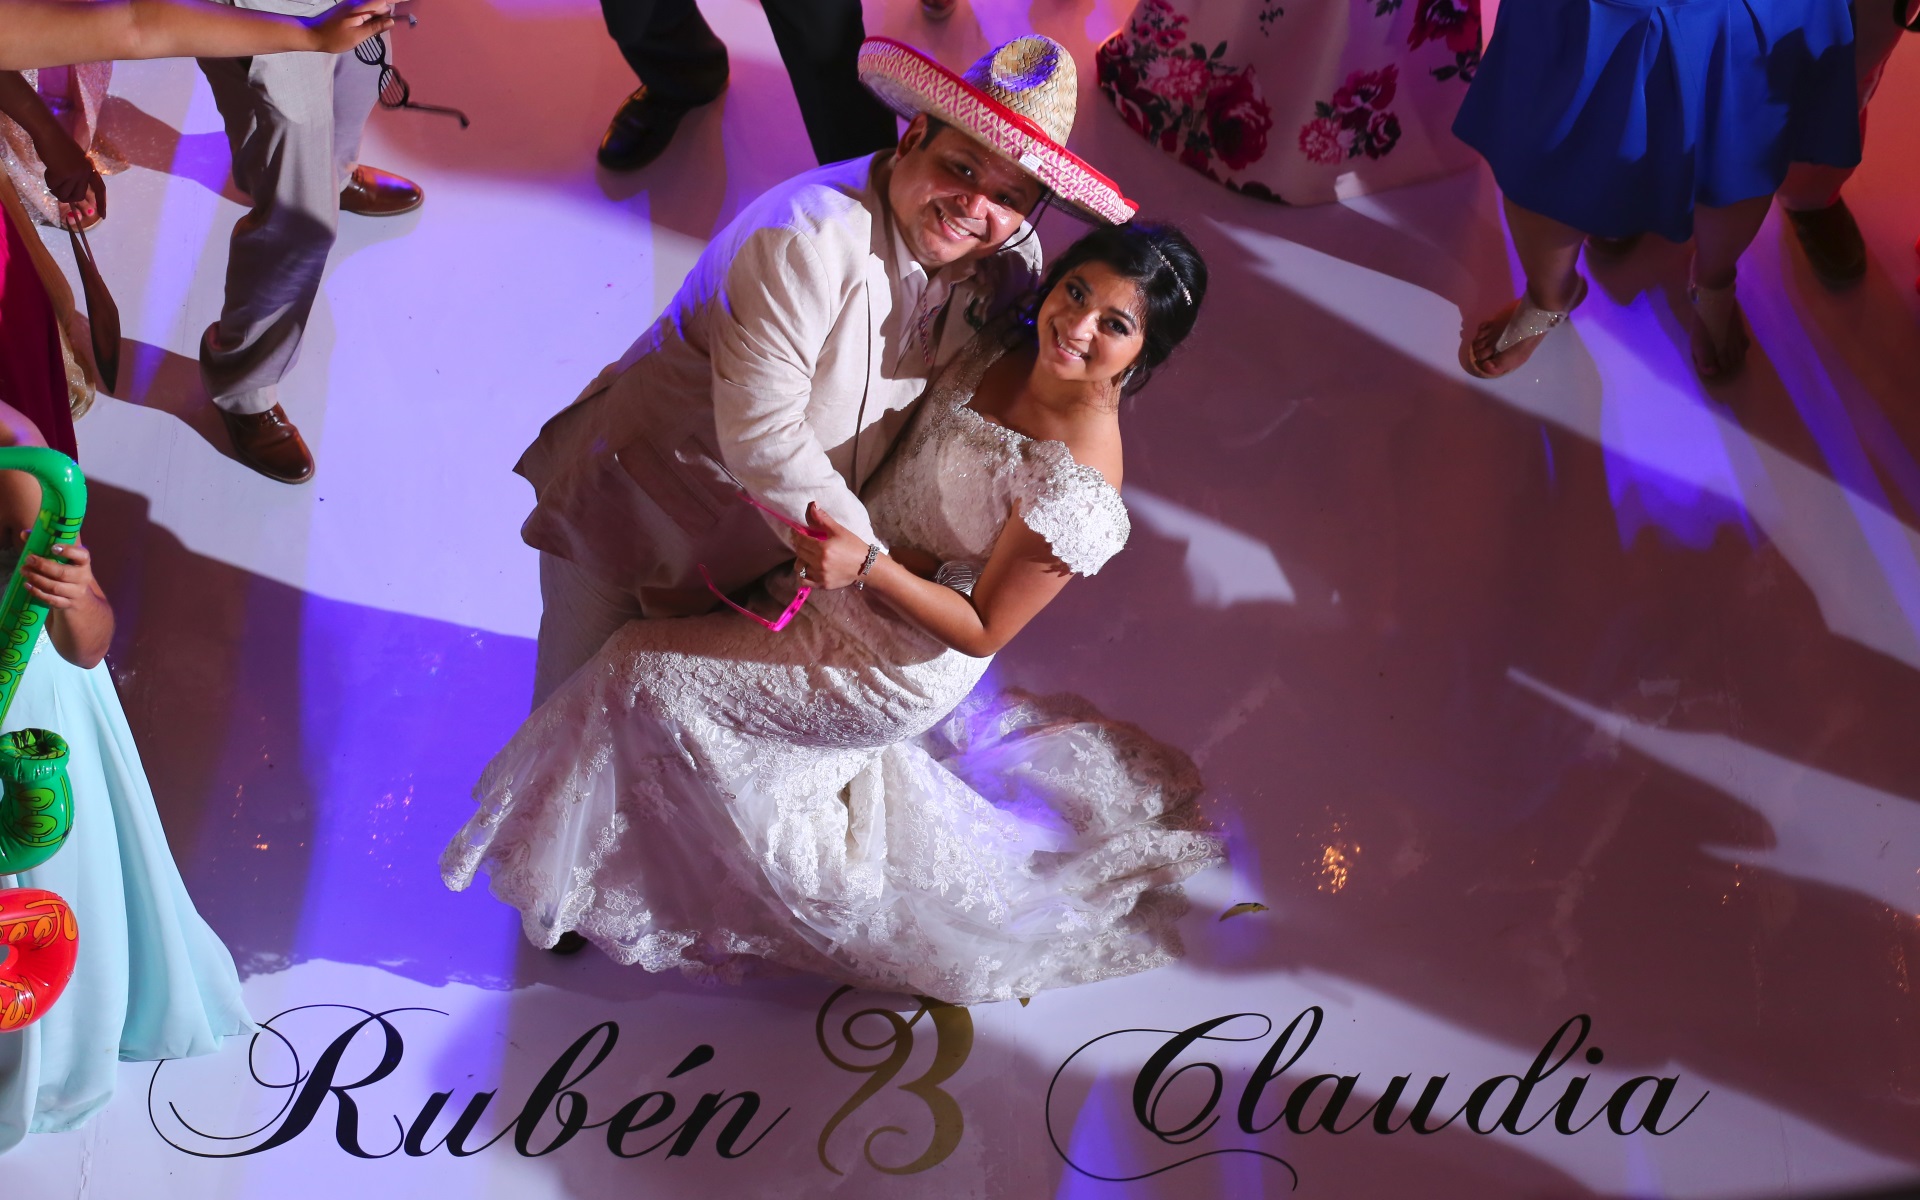 Ruben & Claudia